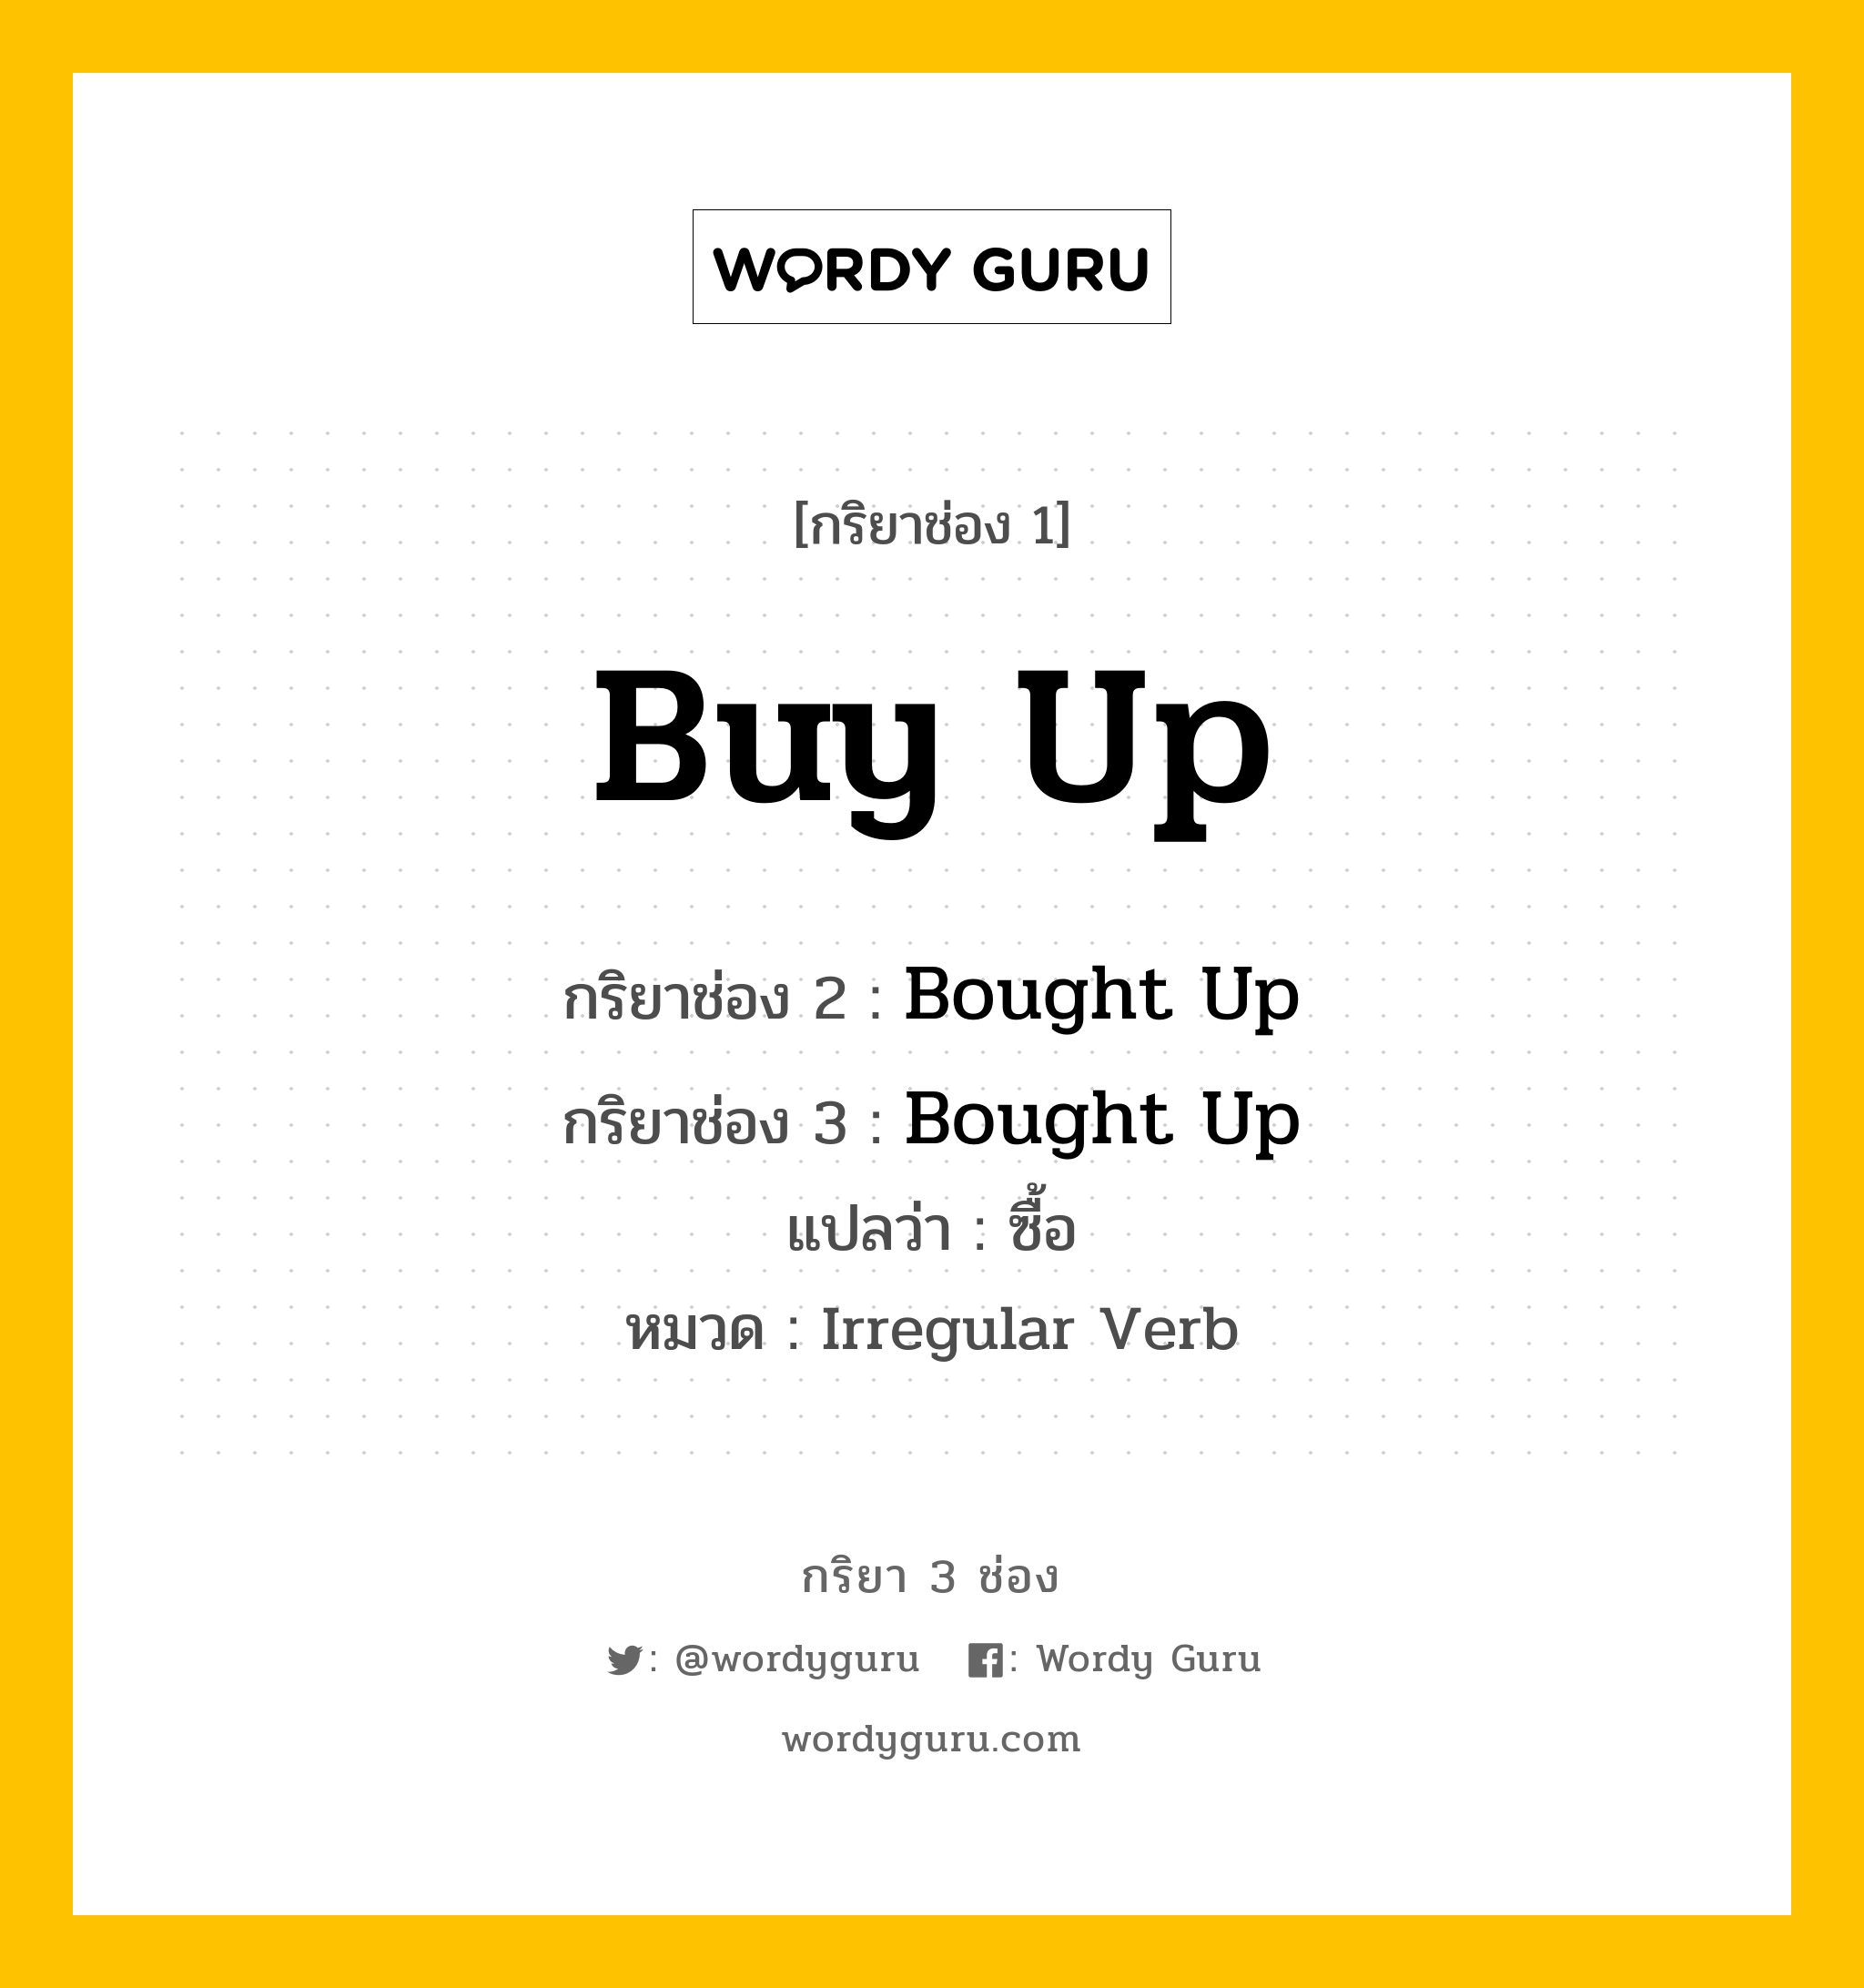 กริยา 3 ช่อง: Buy Up ช่อง 2 Buy Up ช่อง 3 คืออะไร, กริยาช่อง 1 Buy Up กริยาช่อง 2 Bought Up กริยาช่อง 3 Bought Up แปลว่า ซื้อ หมวด Irregular Verb หมวด Irregular Verb